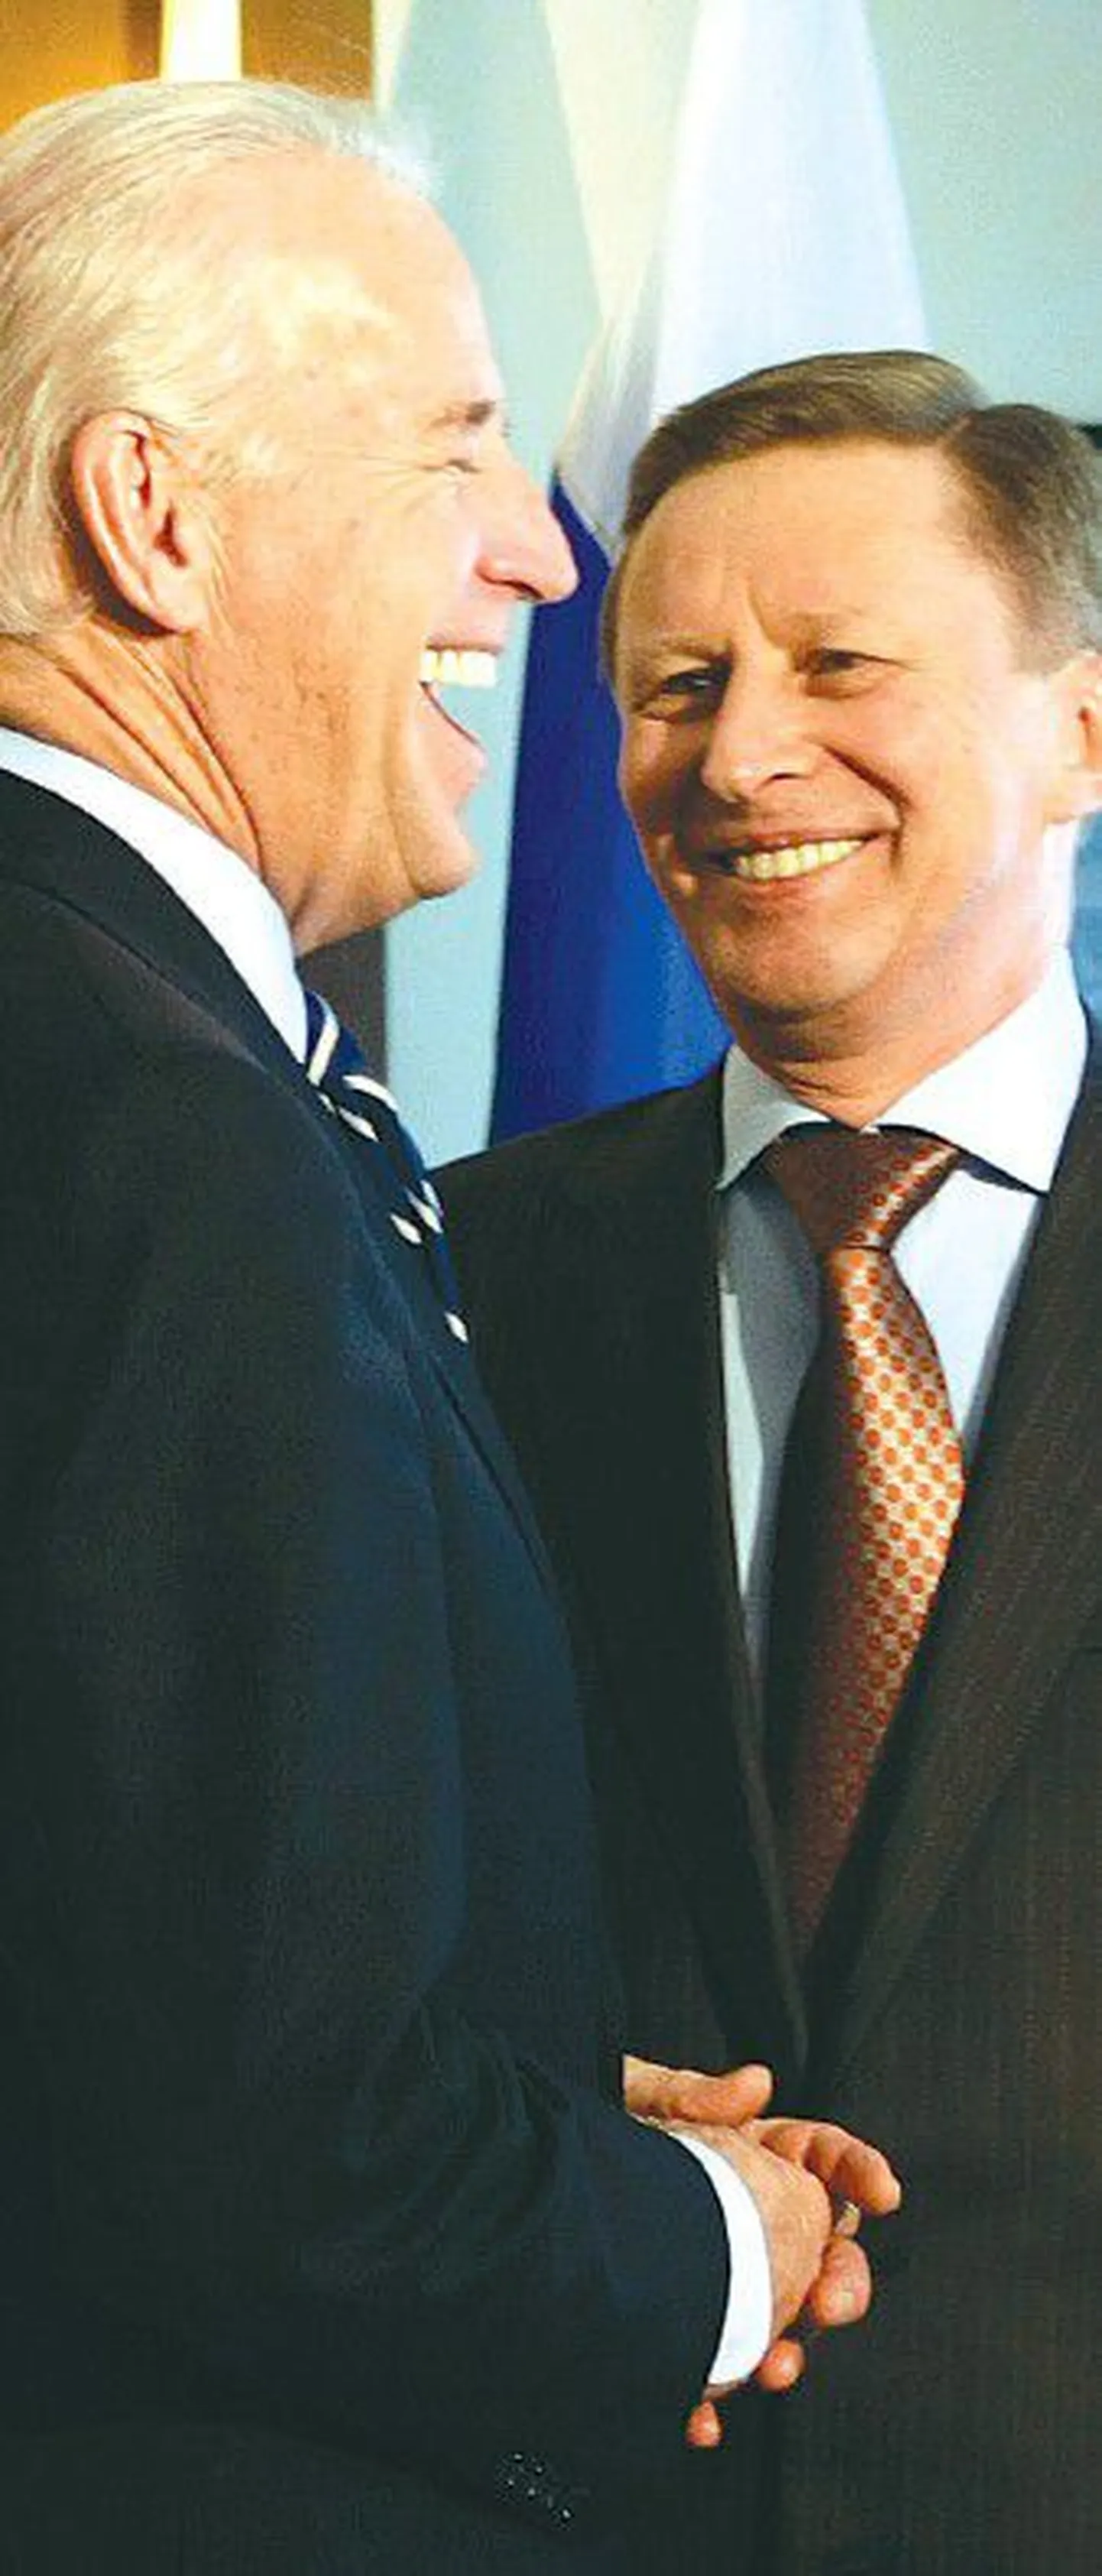 Вице-президент США Джо Байден встретился вчера в Мюнхене с российским вице-премьером Сергеем Ивановым.